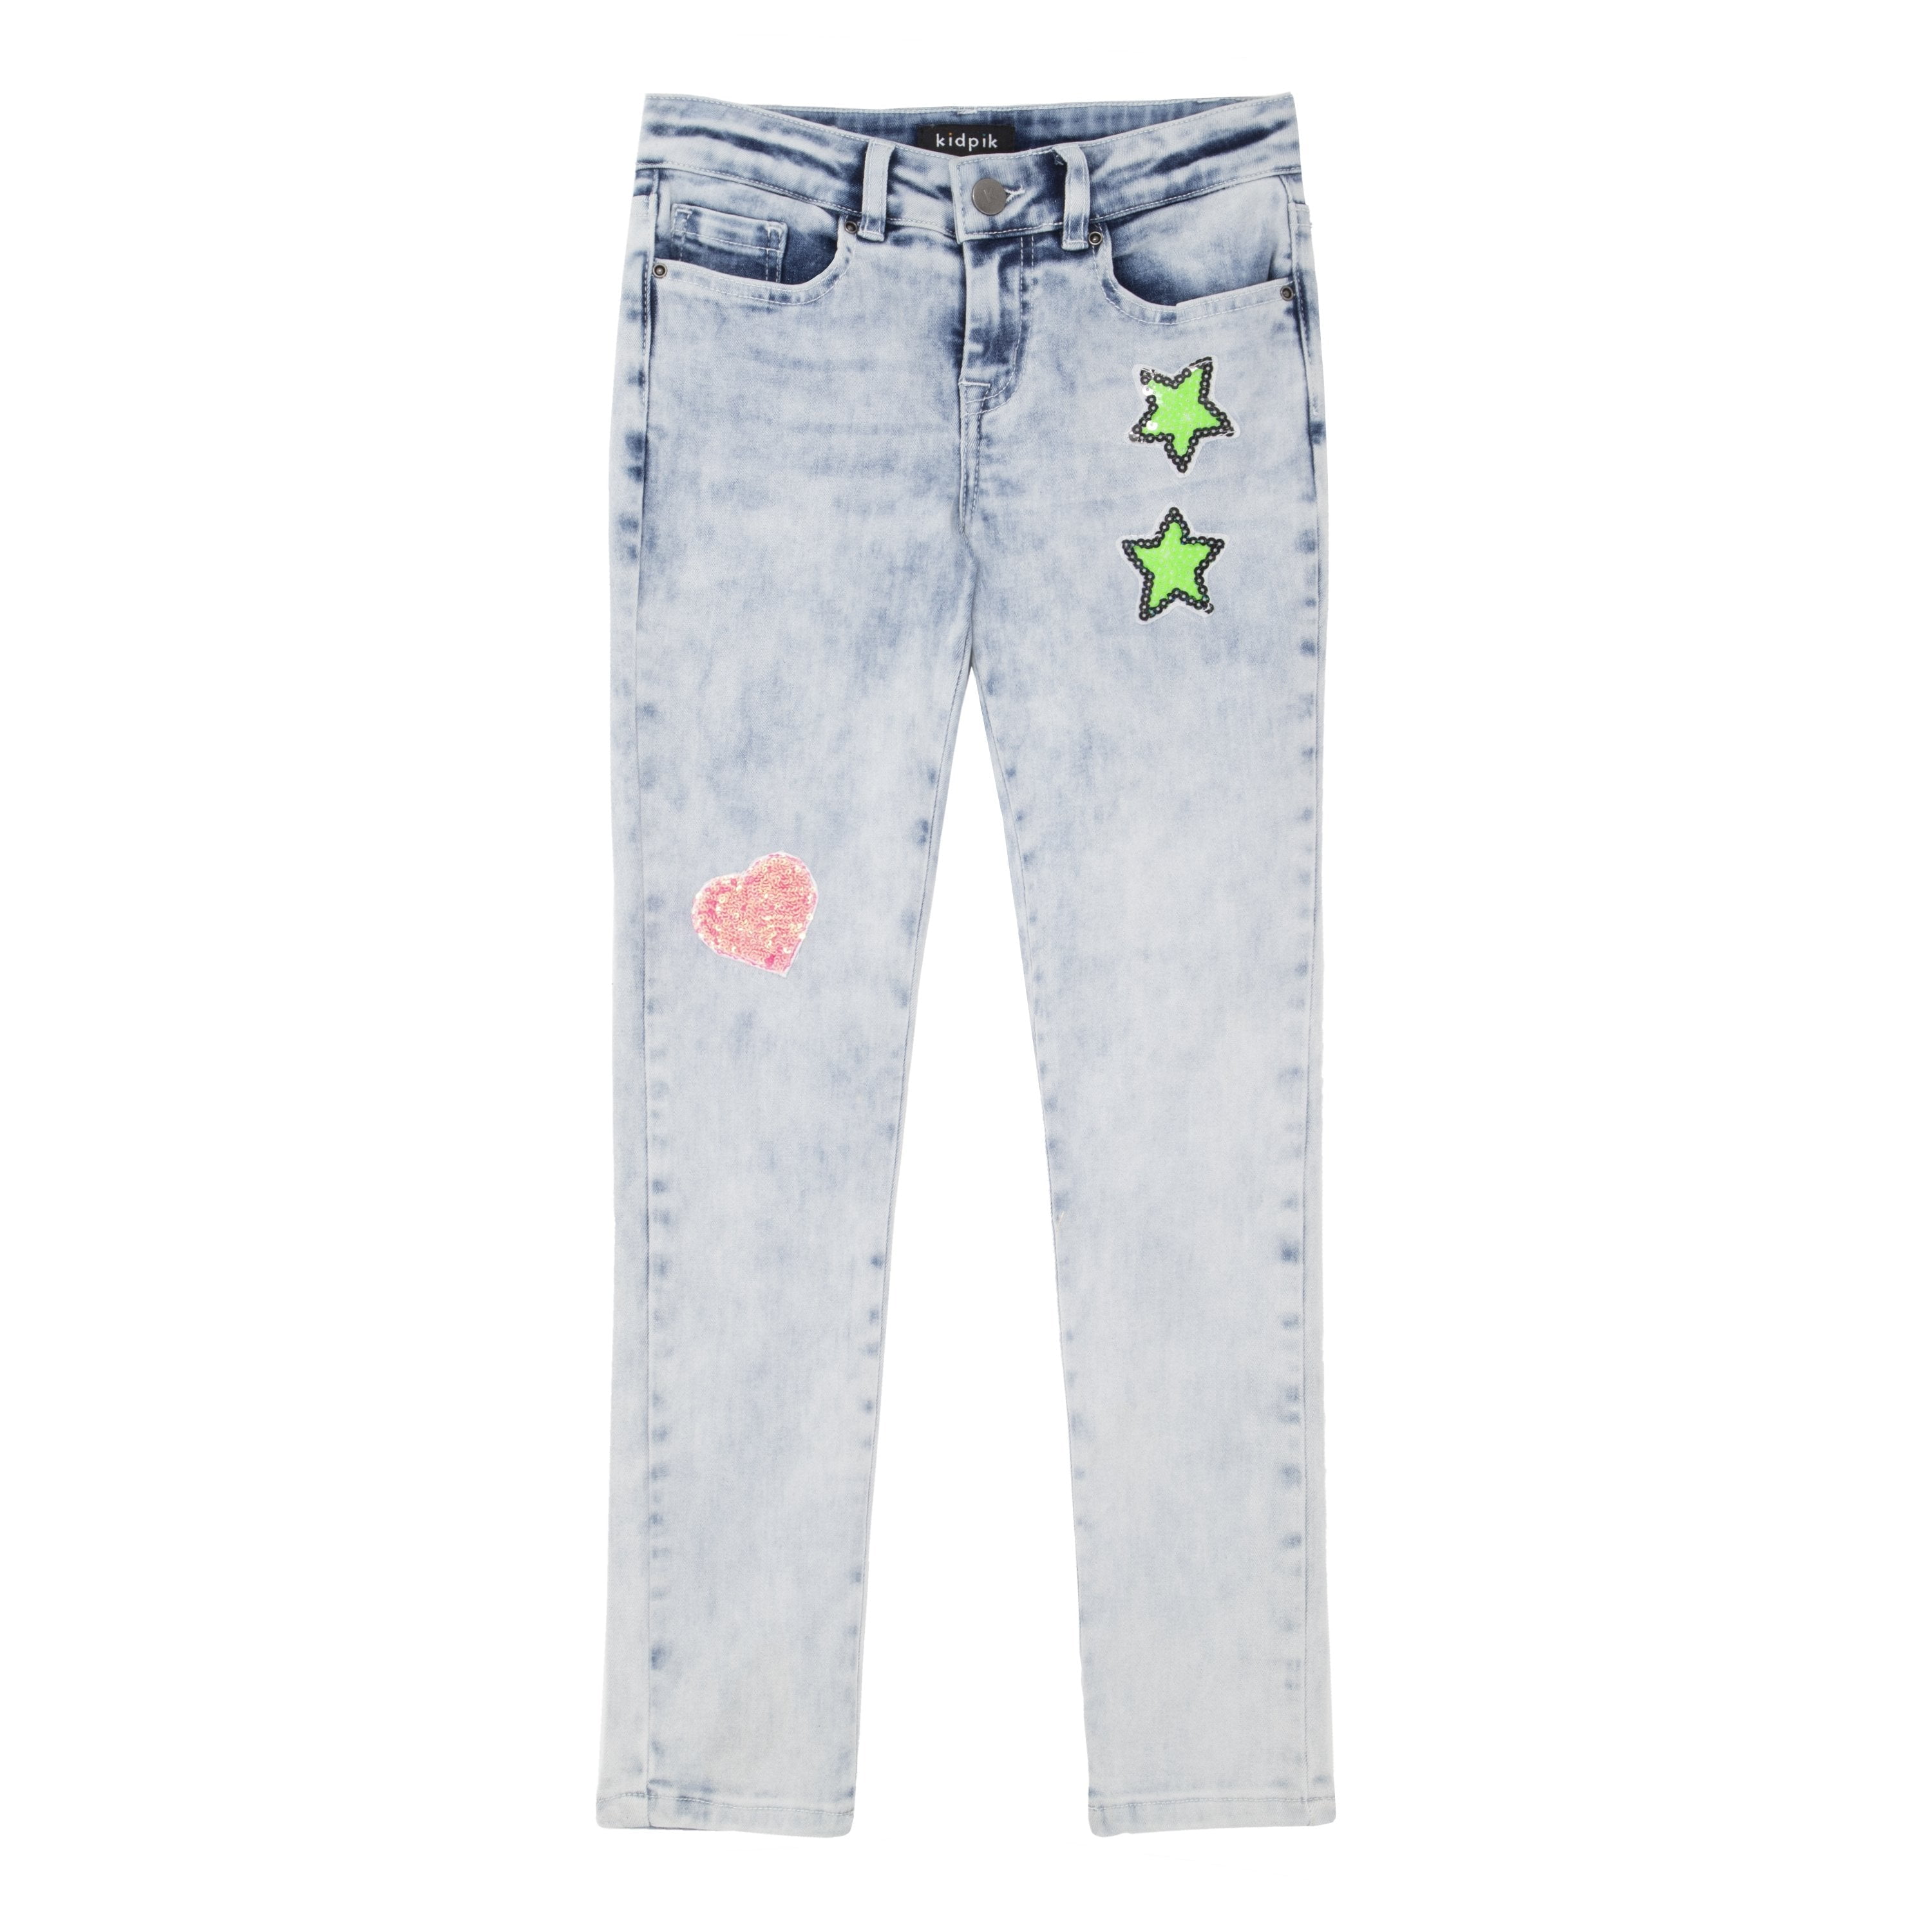 KIDPIK Girls Premium Denim, 5 Pocket Sequin Patch Denim Skinny Jean, Size 4